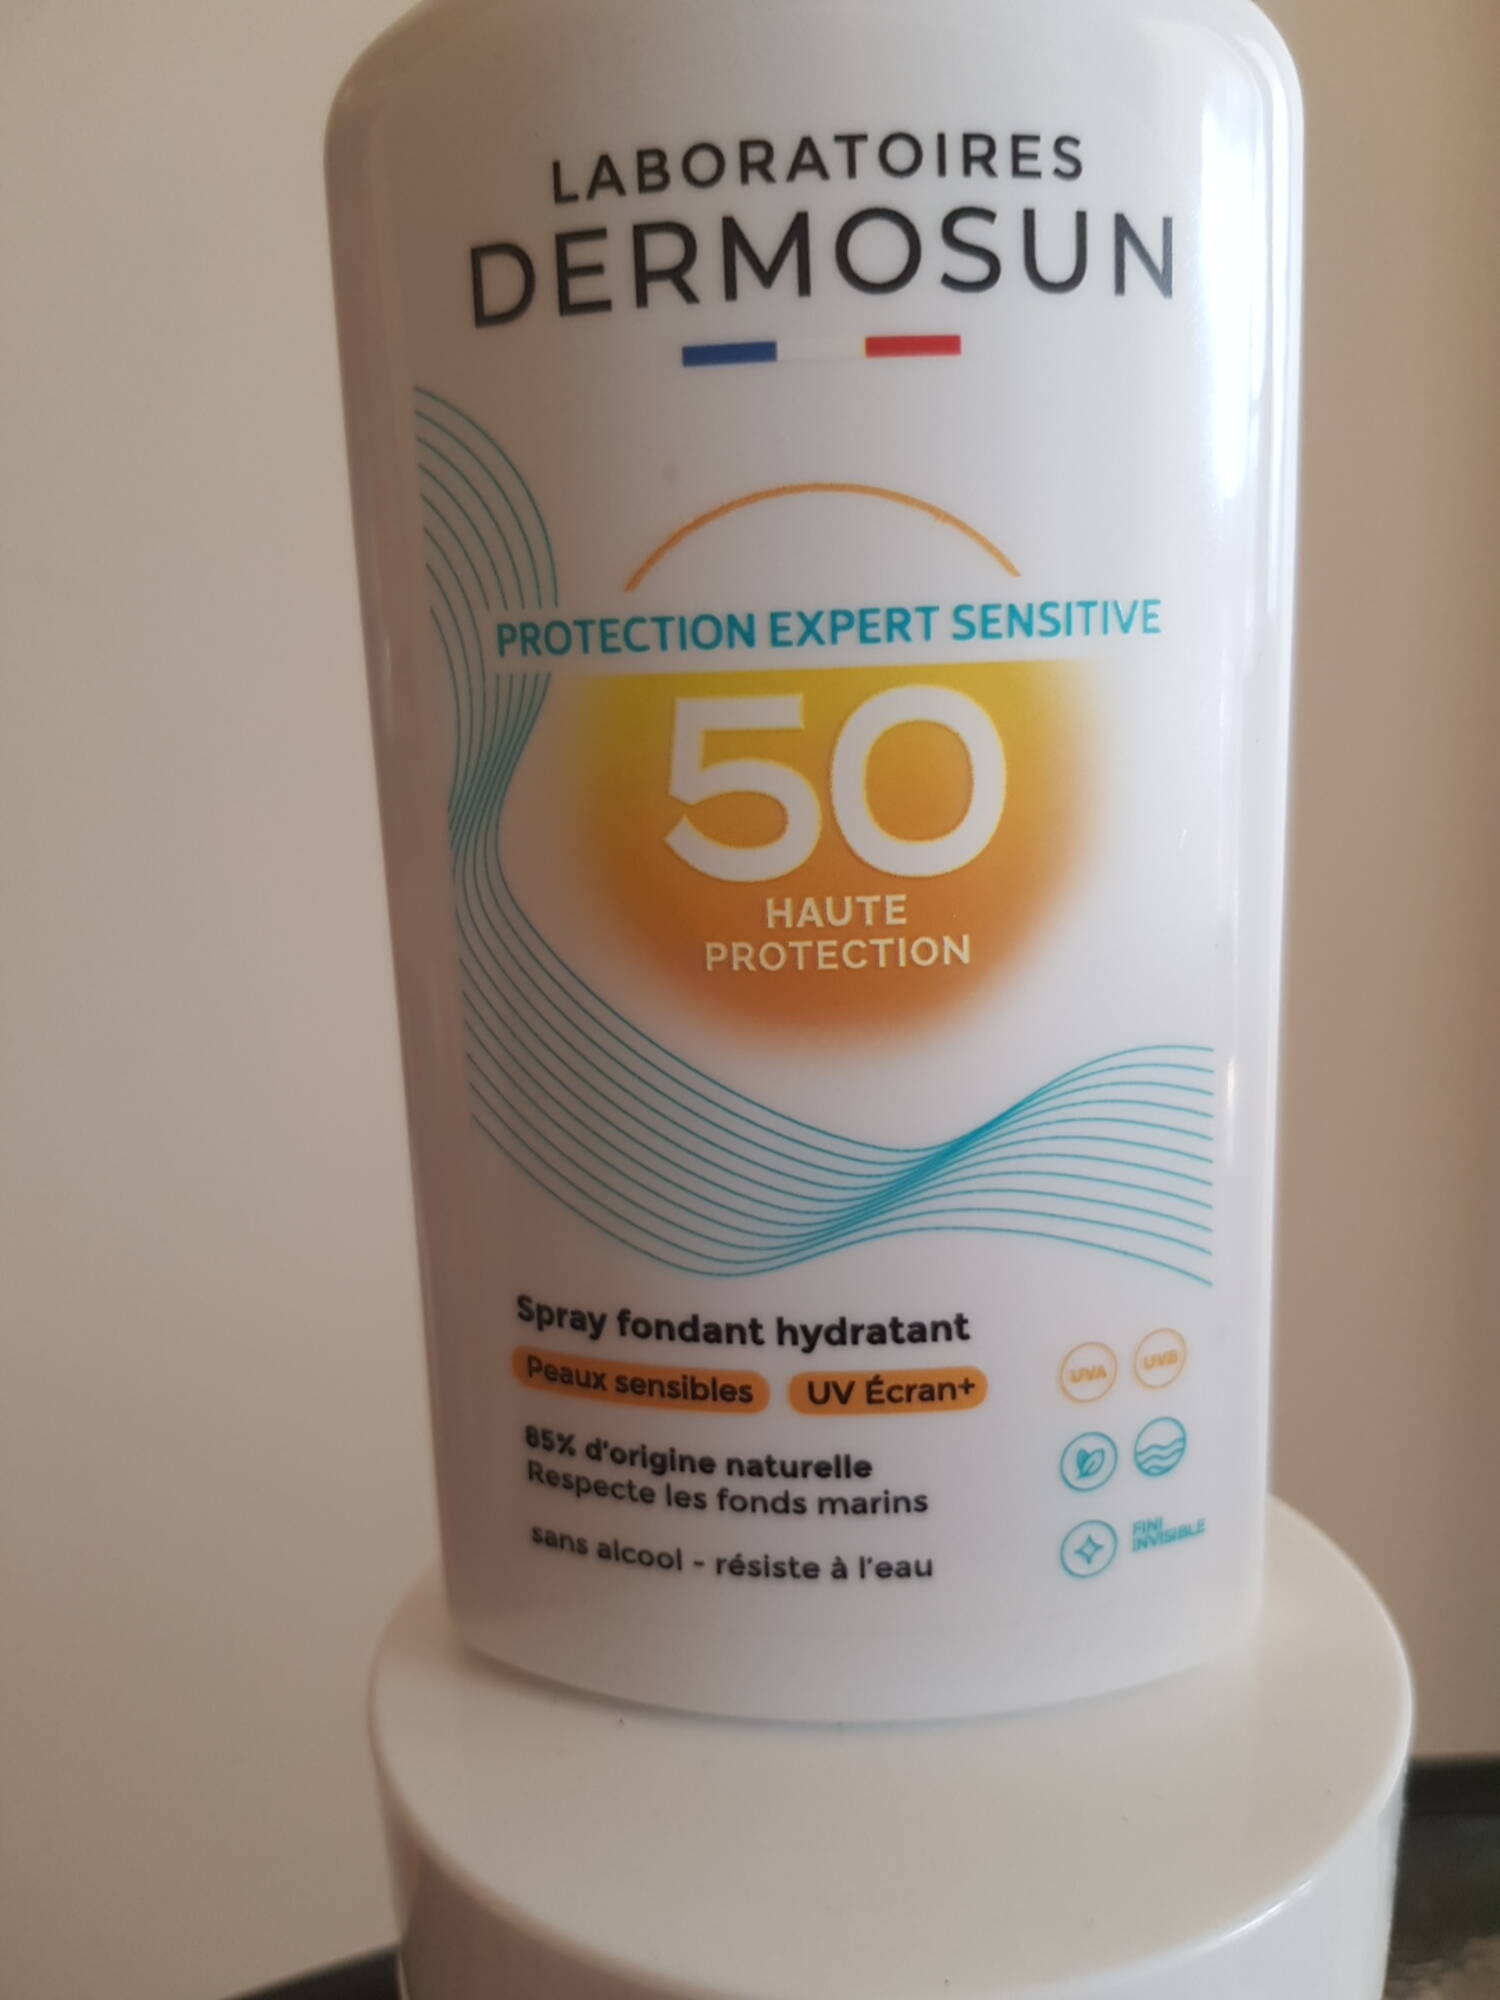 DERMOSUN - Protection expert sensitive SPF 50